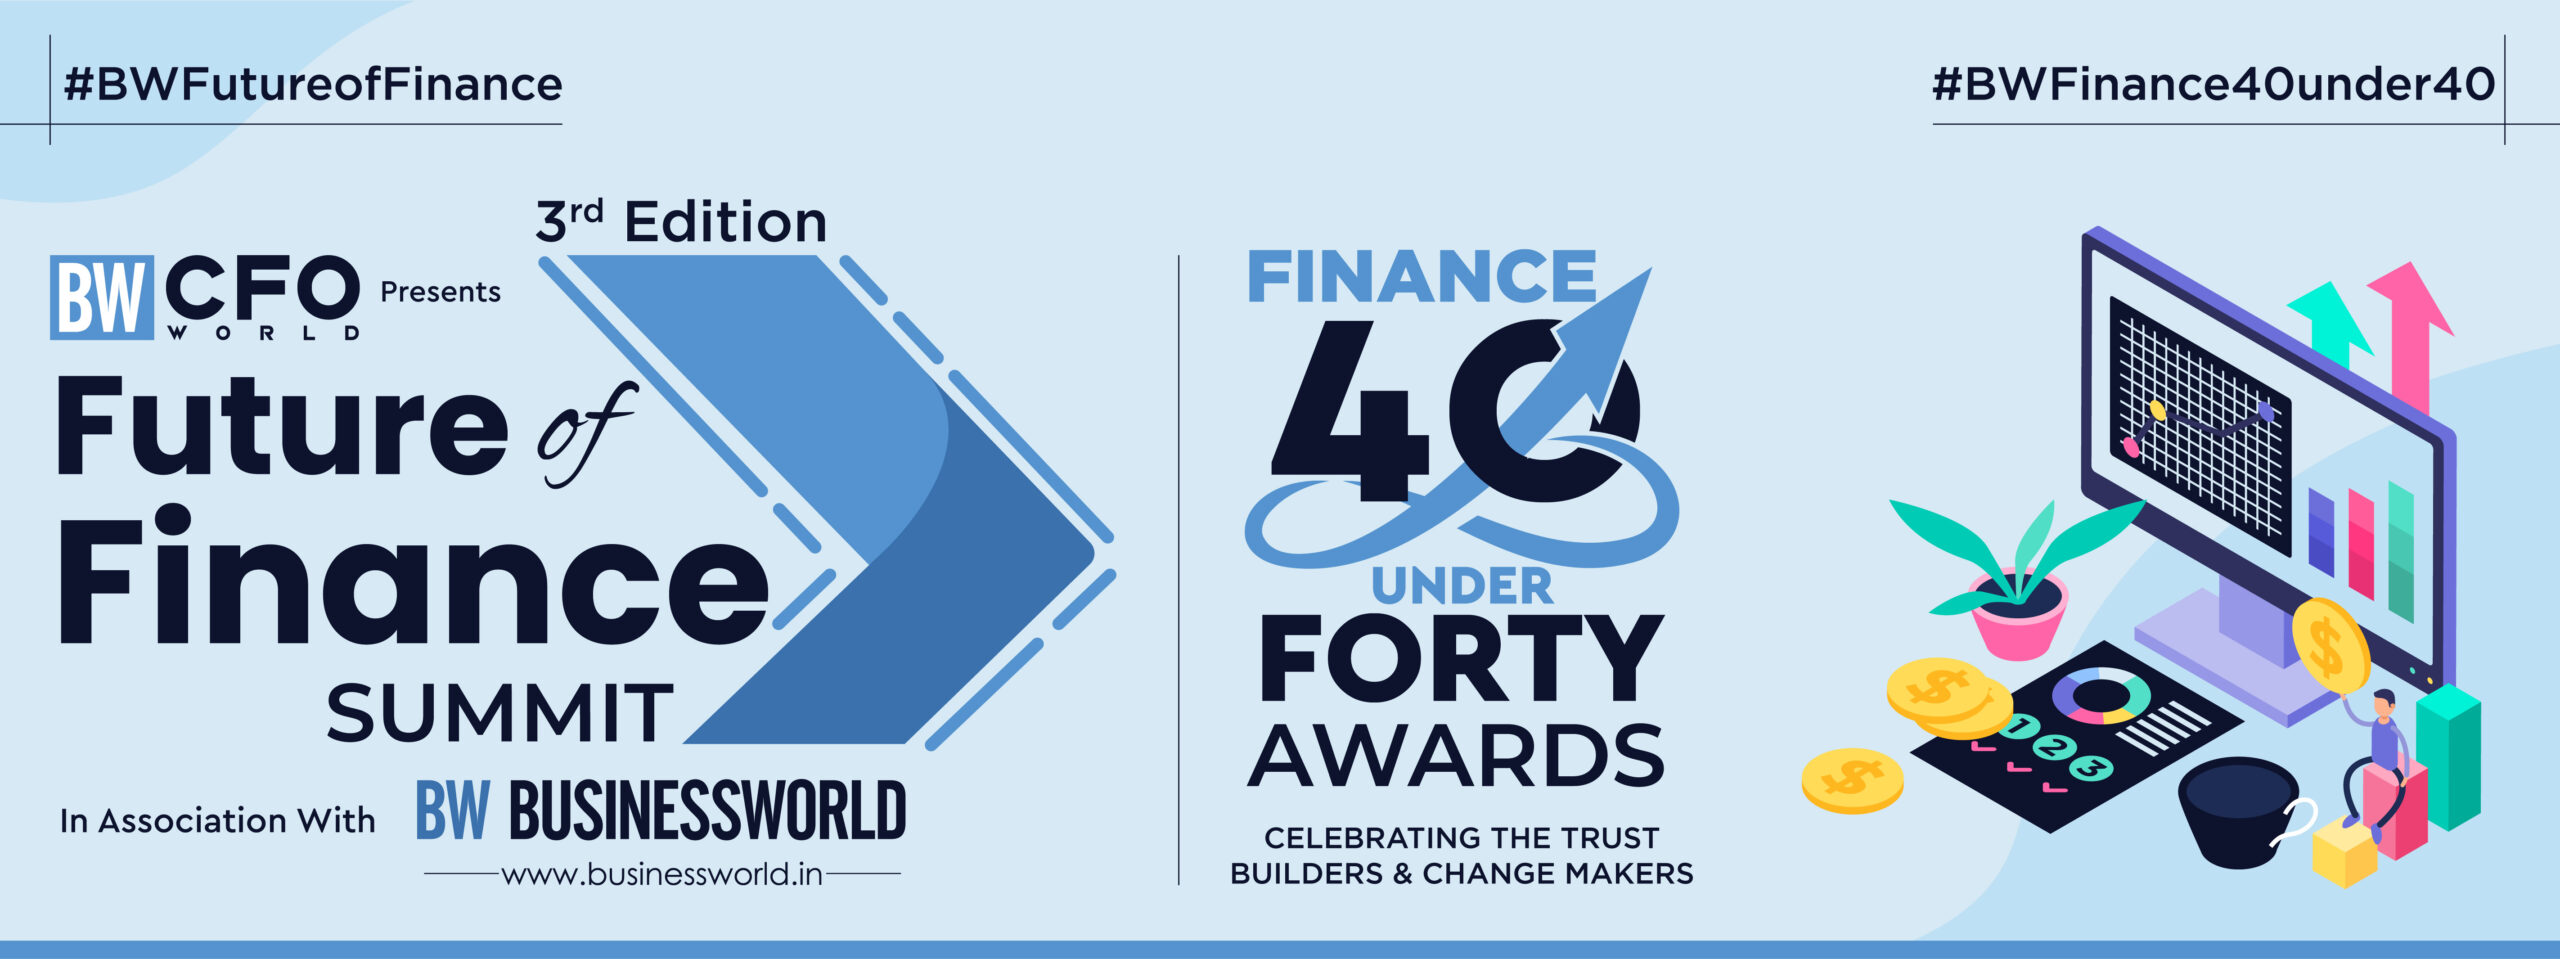 BW Finance 40 under 40 Summit & Awards 2022